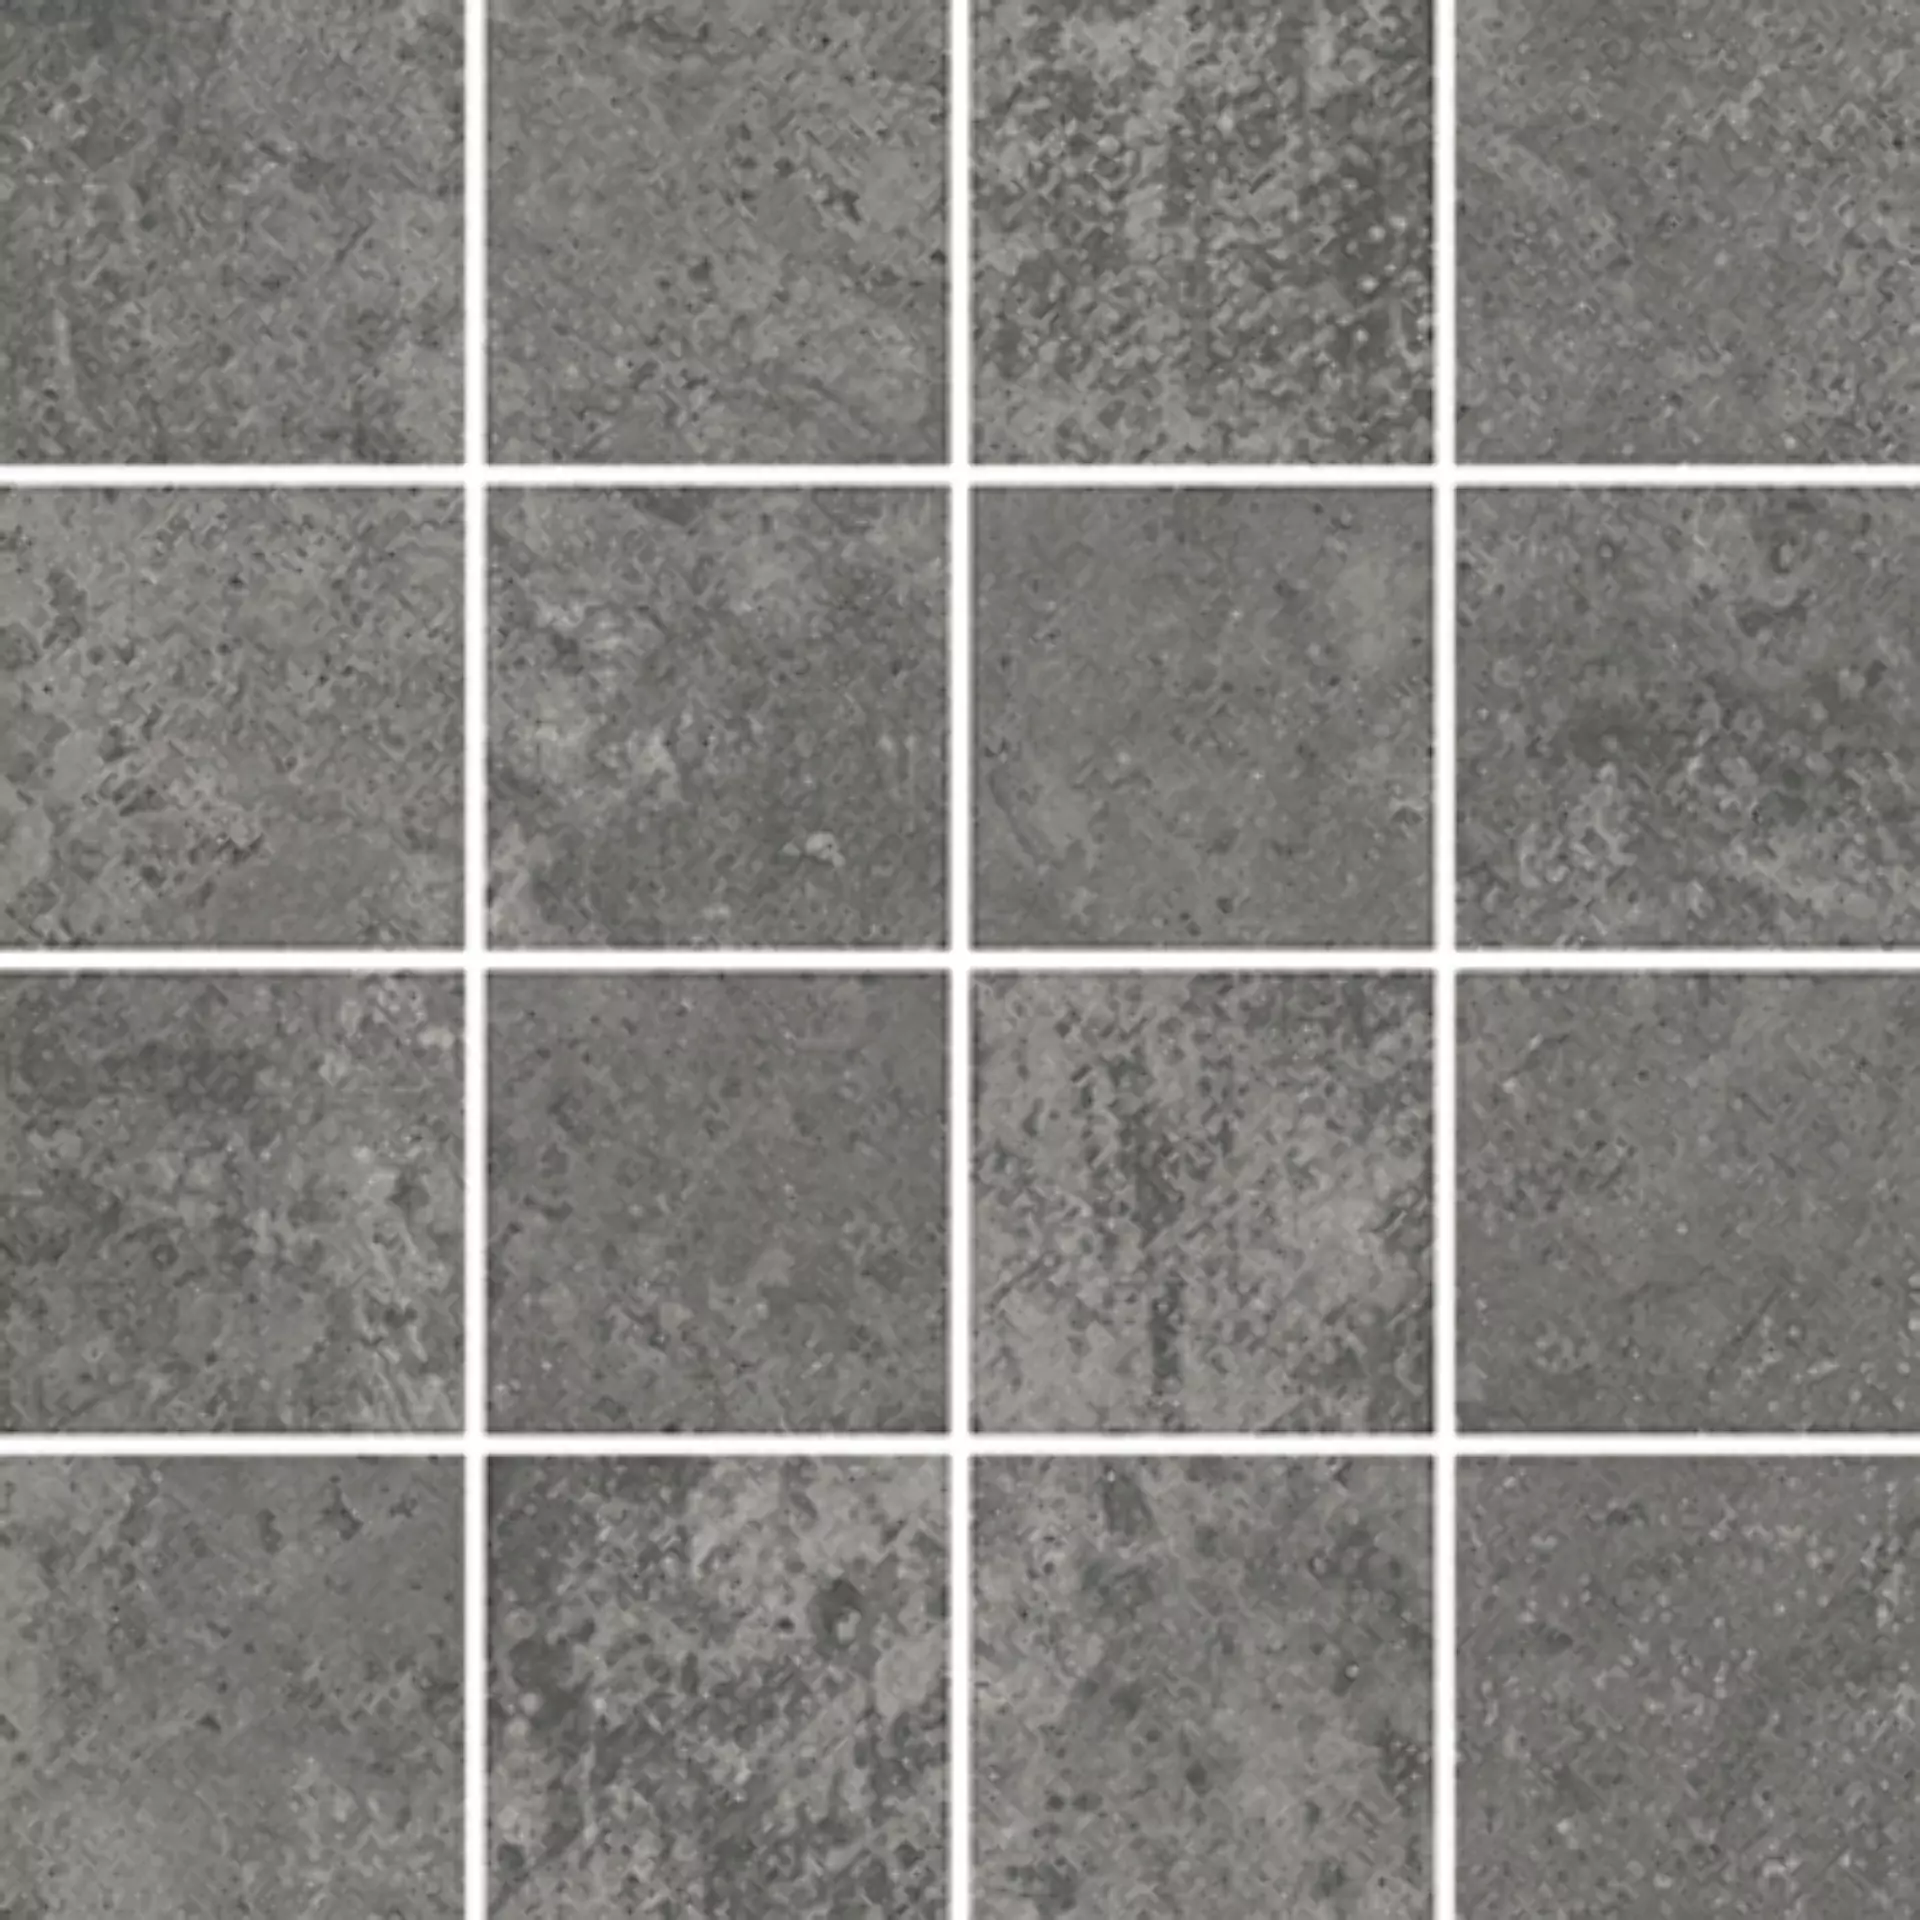 Wandfliese,Bodenfliese Villeroy & Boch Atlanta Night Grey Matt Night Grey 2013-AL90 matt 7,5x7,5cm Mosaik (7,5x7,5) rektifiziert 10mm